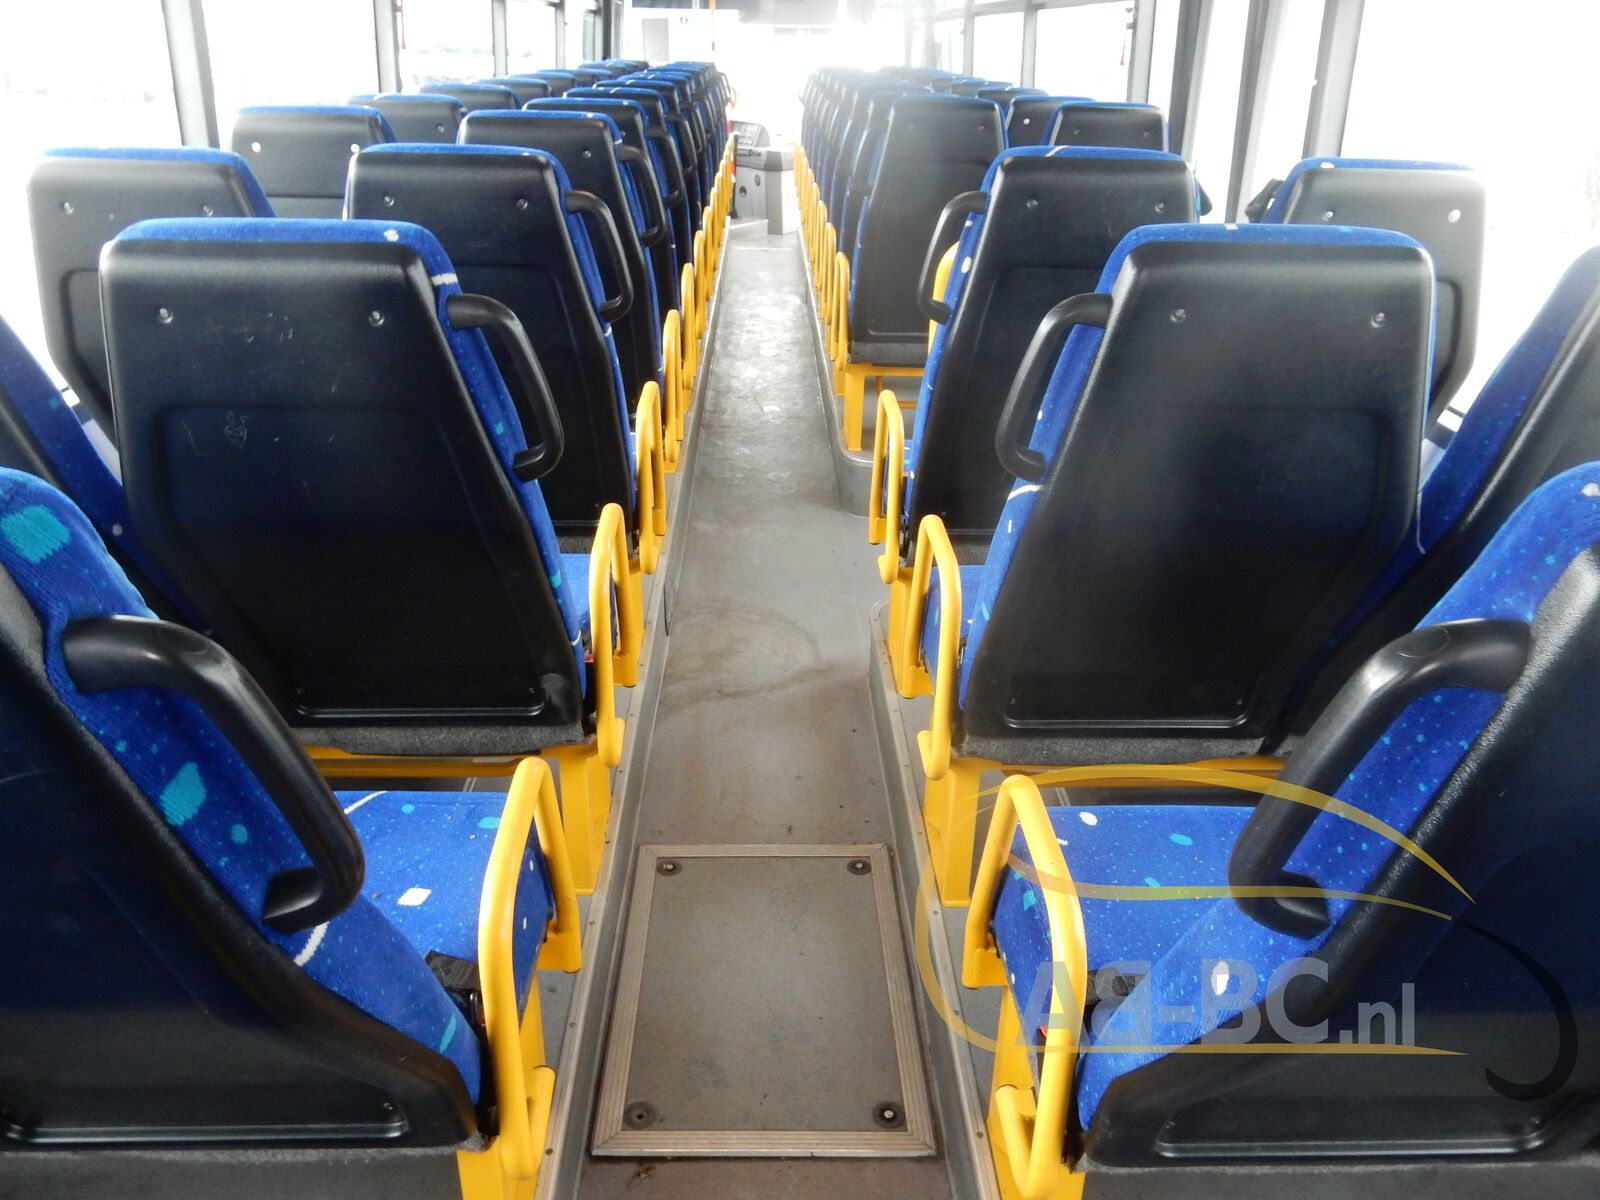 interurban-bus-IVECO-Irisbus-Recreo-64-Seats---1634818708496050783_orig_d5fd580e4c4412ff229162ec69e54432--21102115152205689900